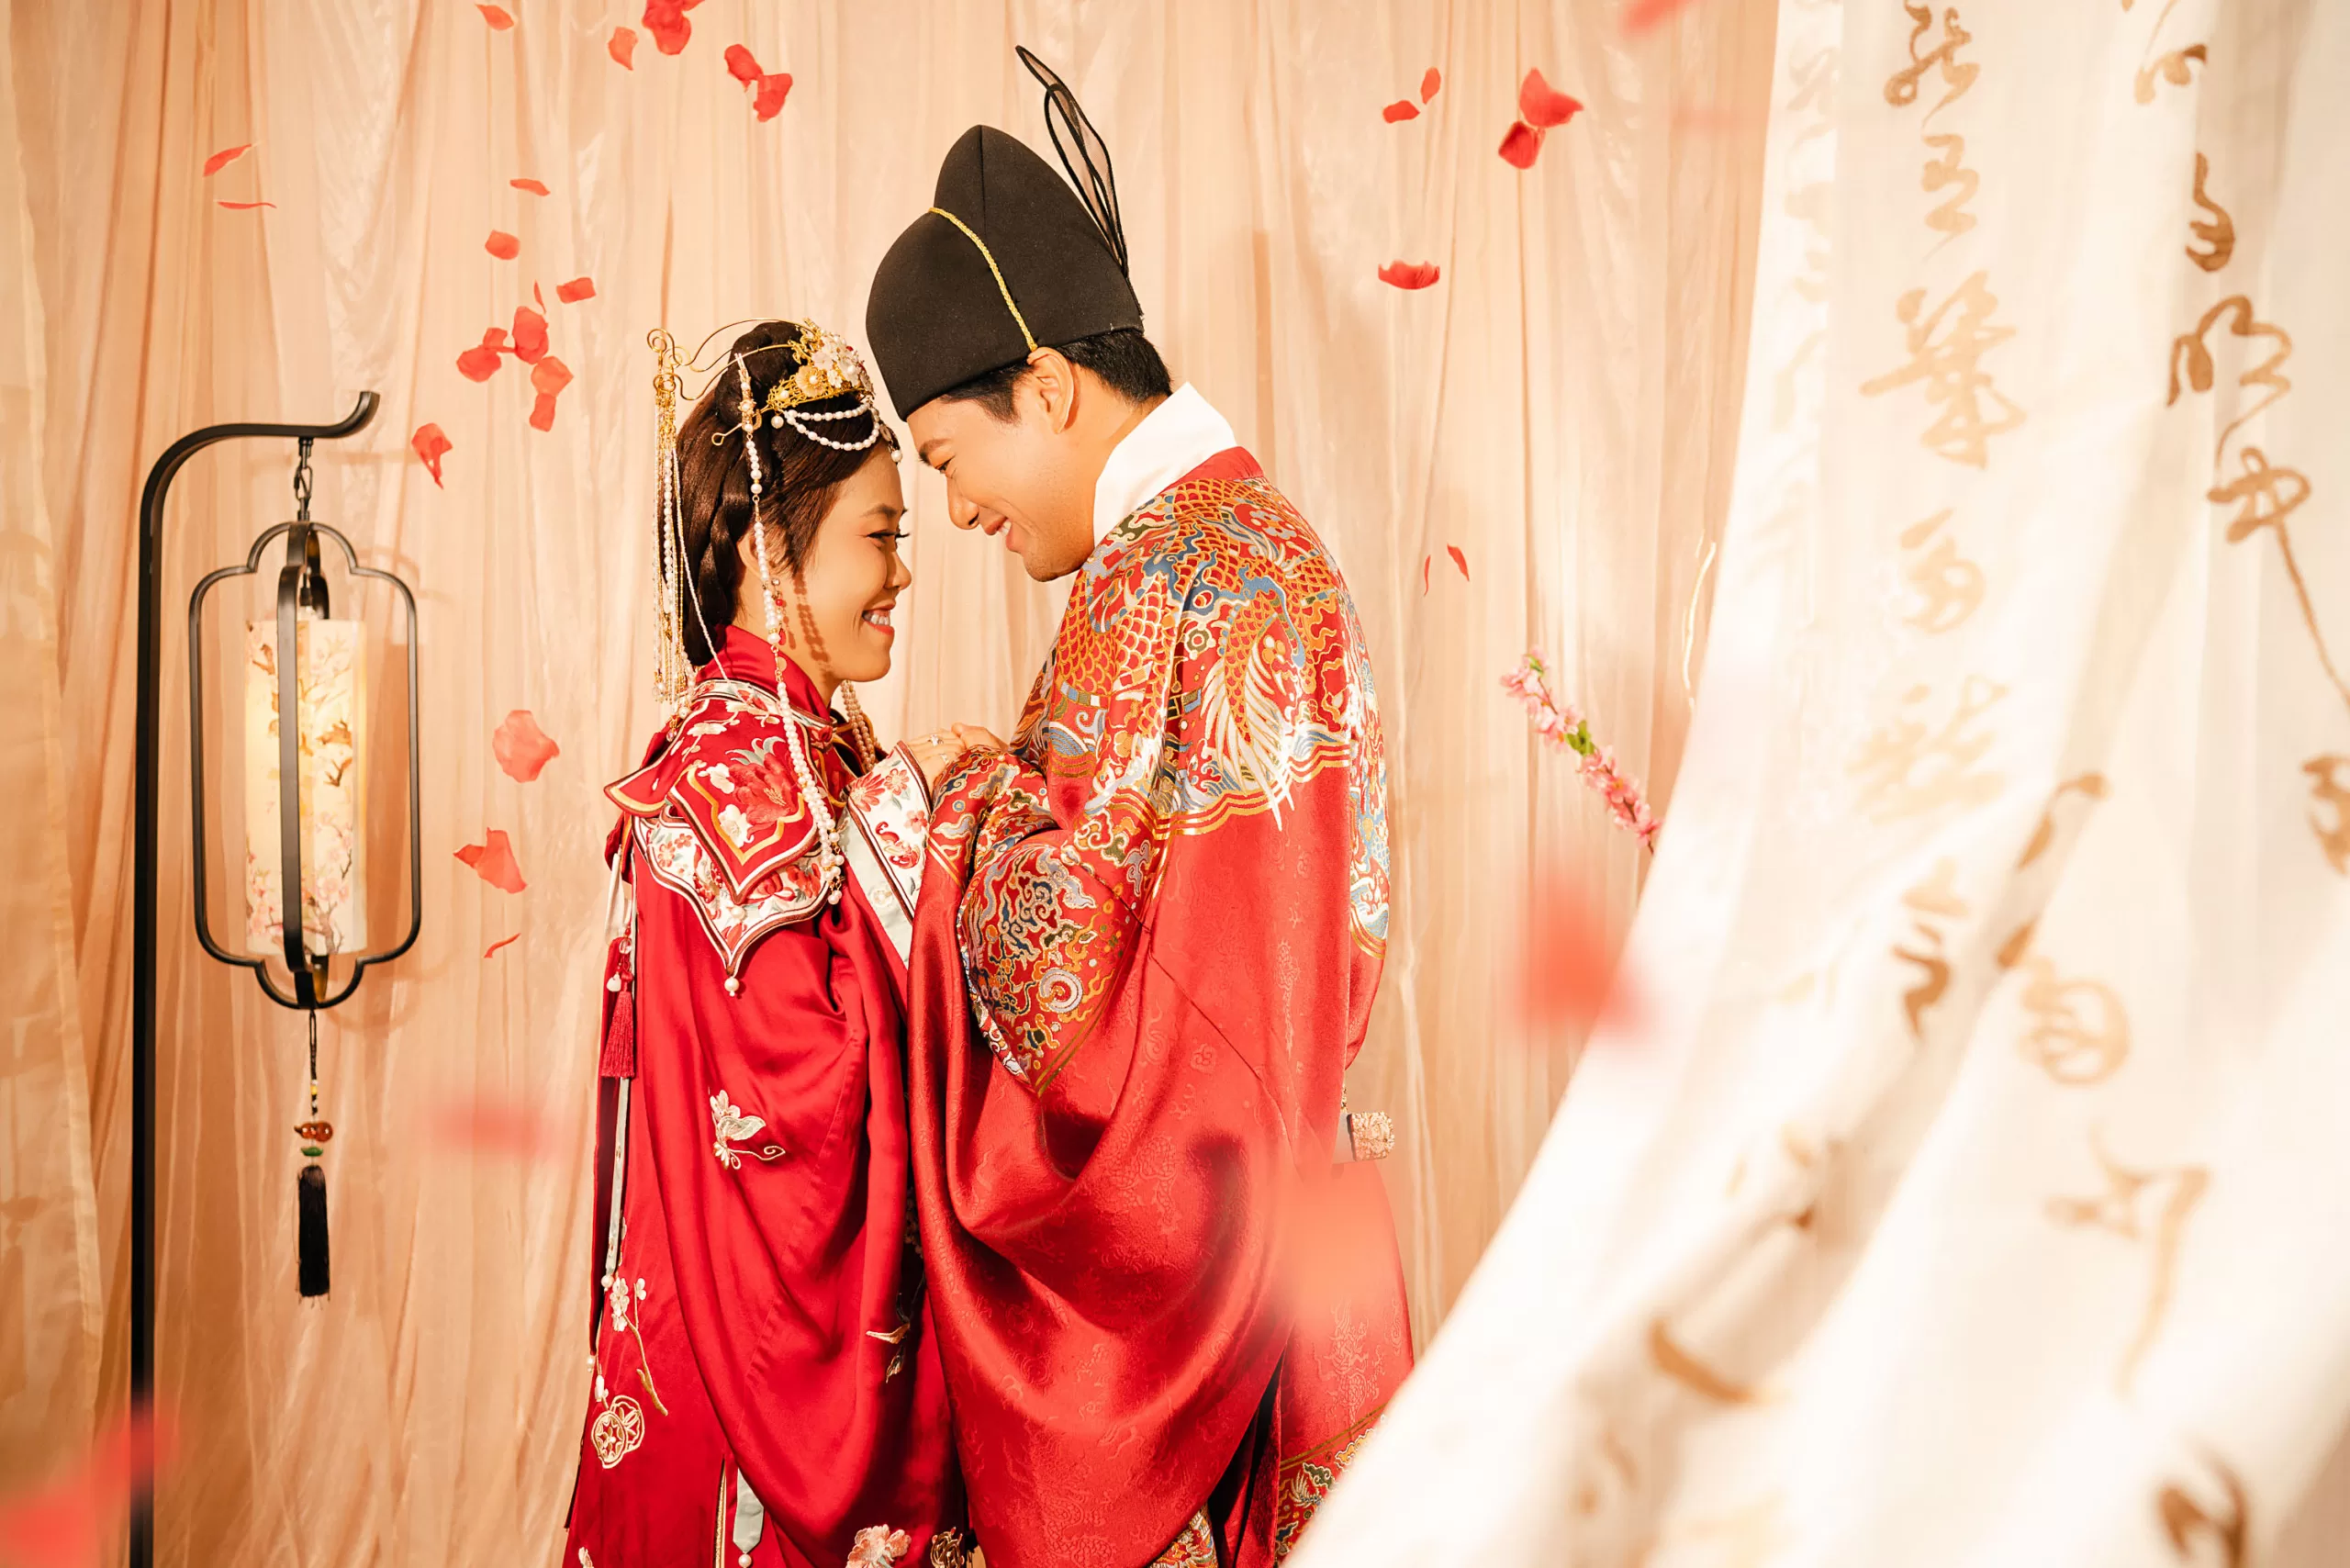 Chinese Hanfu pre-wedding photoshoot at Chinatown, Singapore.